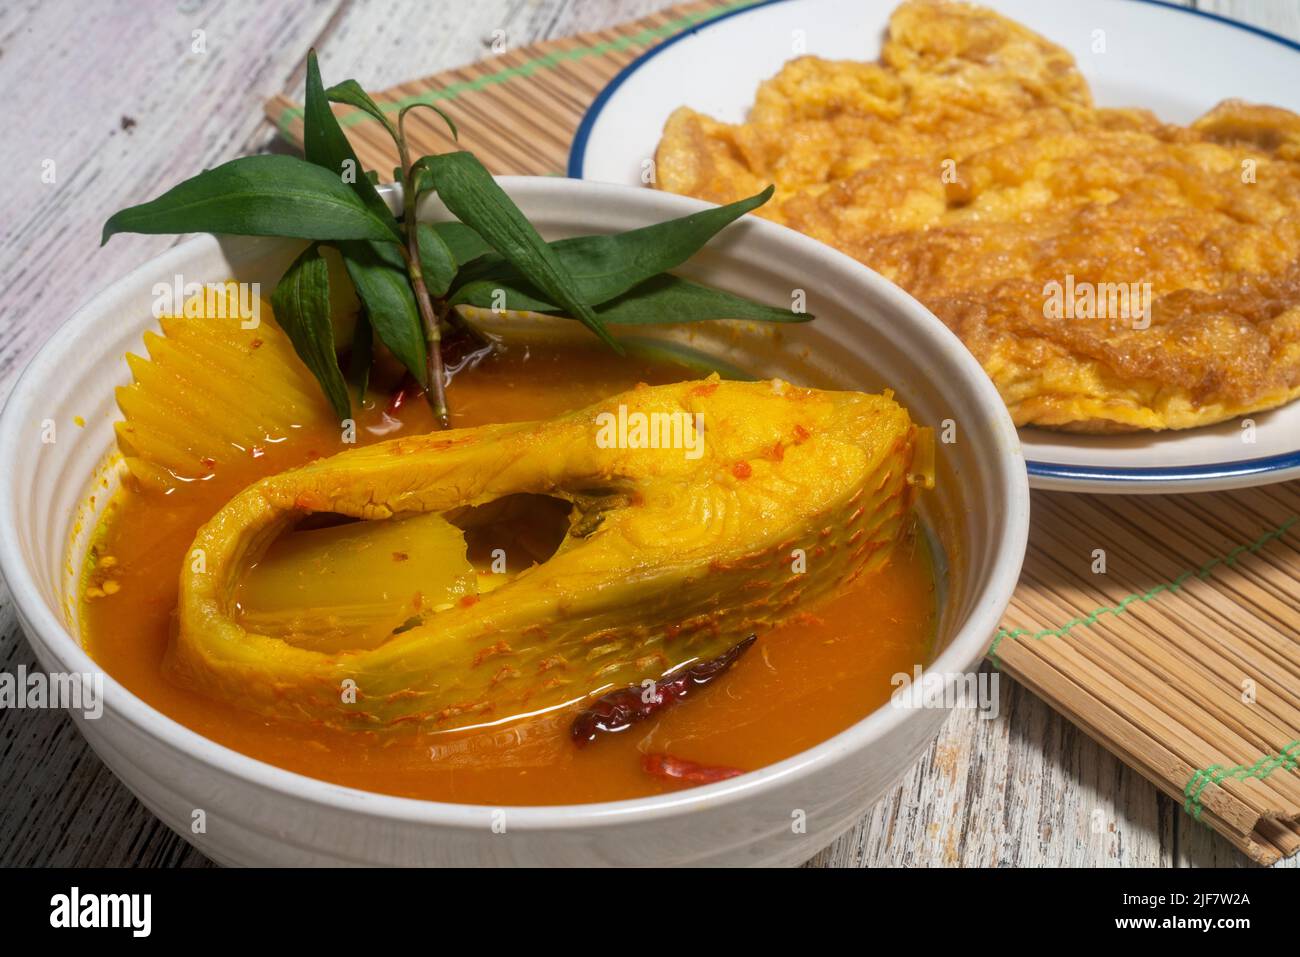 Sud Thai Gaeng Som - soupe de poisson rouge Tilapia à la papaye, saveur épicée. Curry de poisson épicé aigre. Banque D'Images